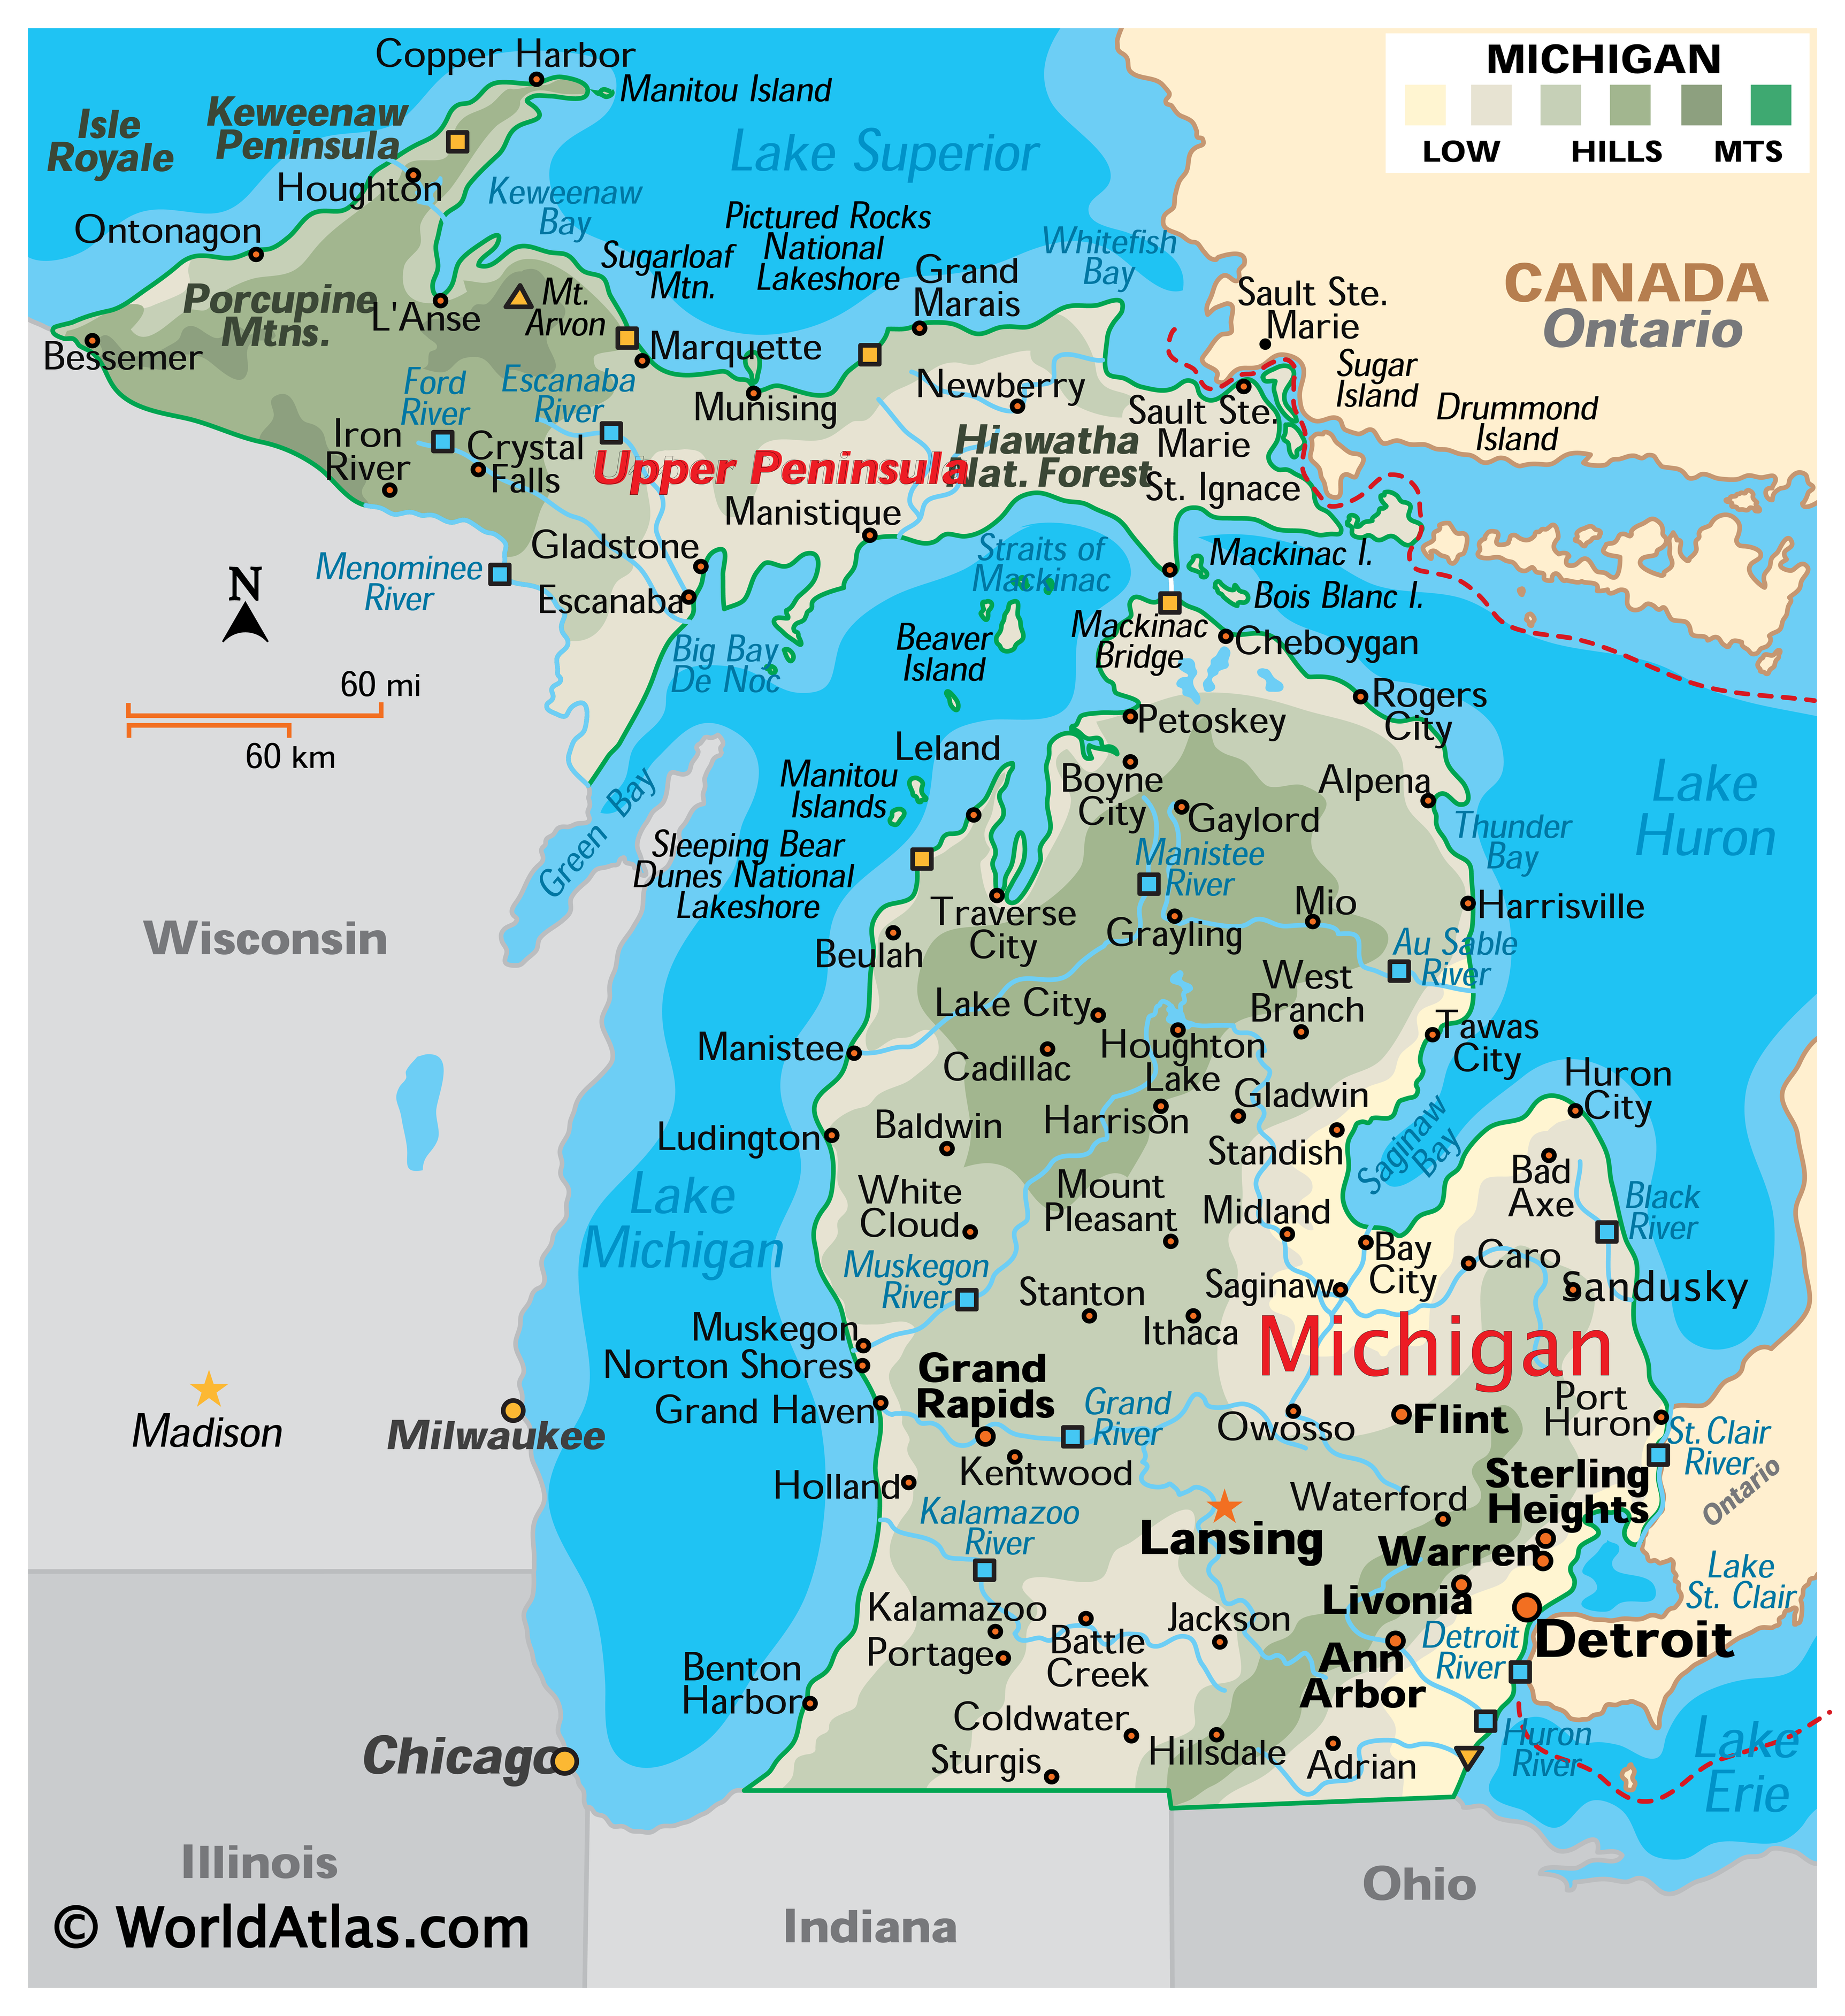 Map of Michigan, USA